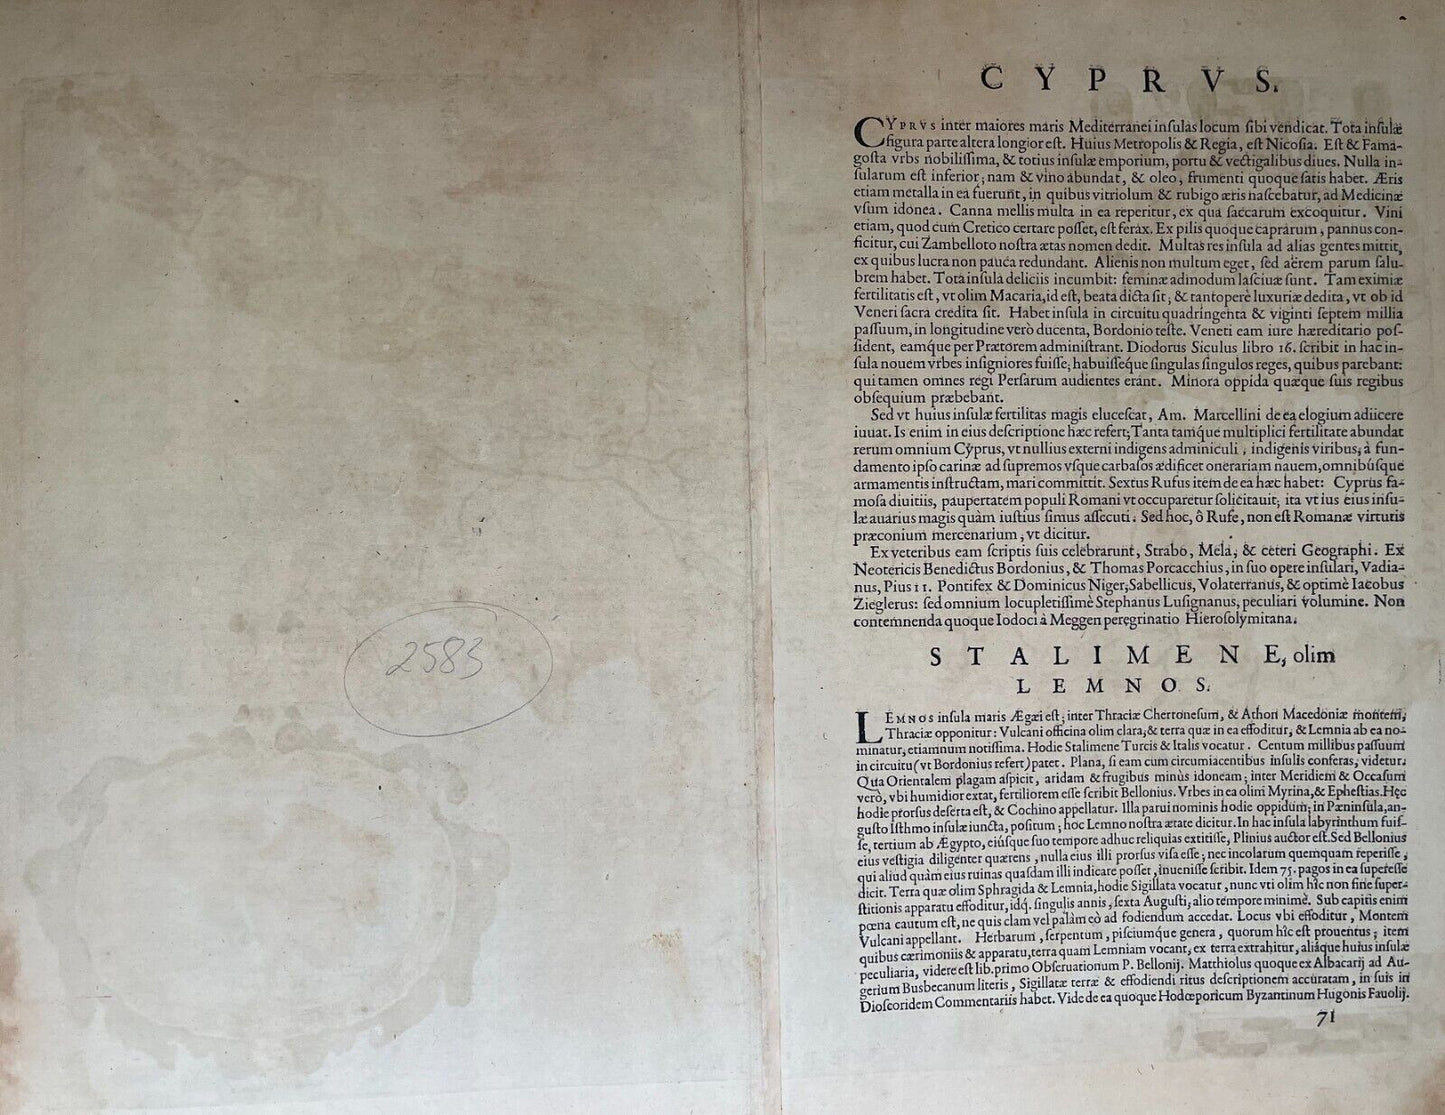 CYPRUS - "Cypri Imsulae" 1579 - Abraham Ortelius- Original Antique Map